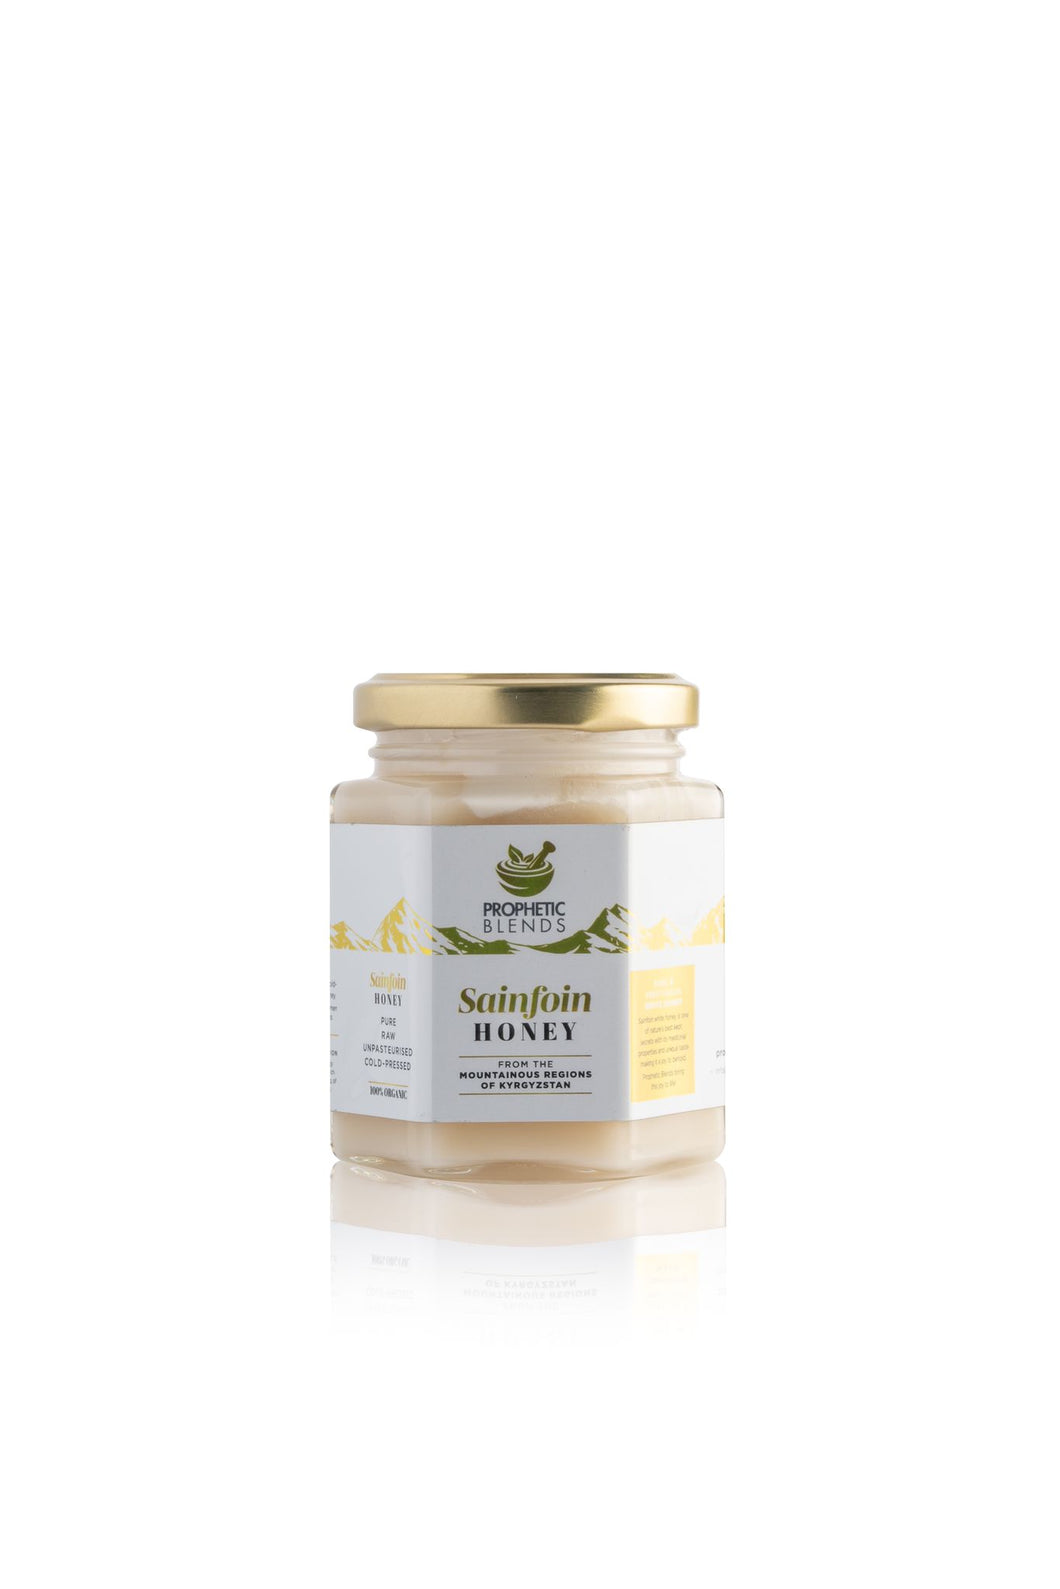 White Sainfoin Honey from Kyrgyzstan